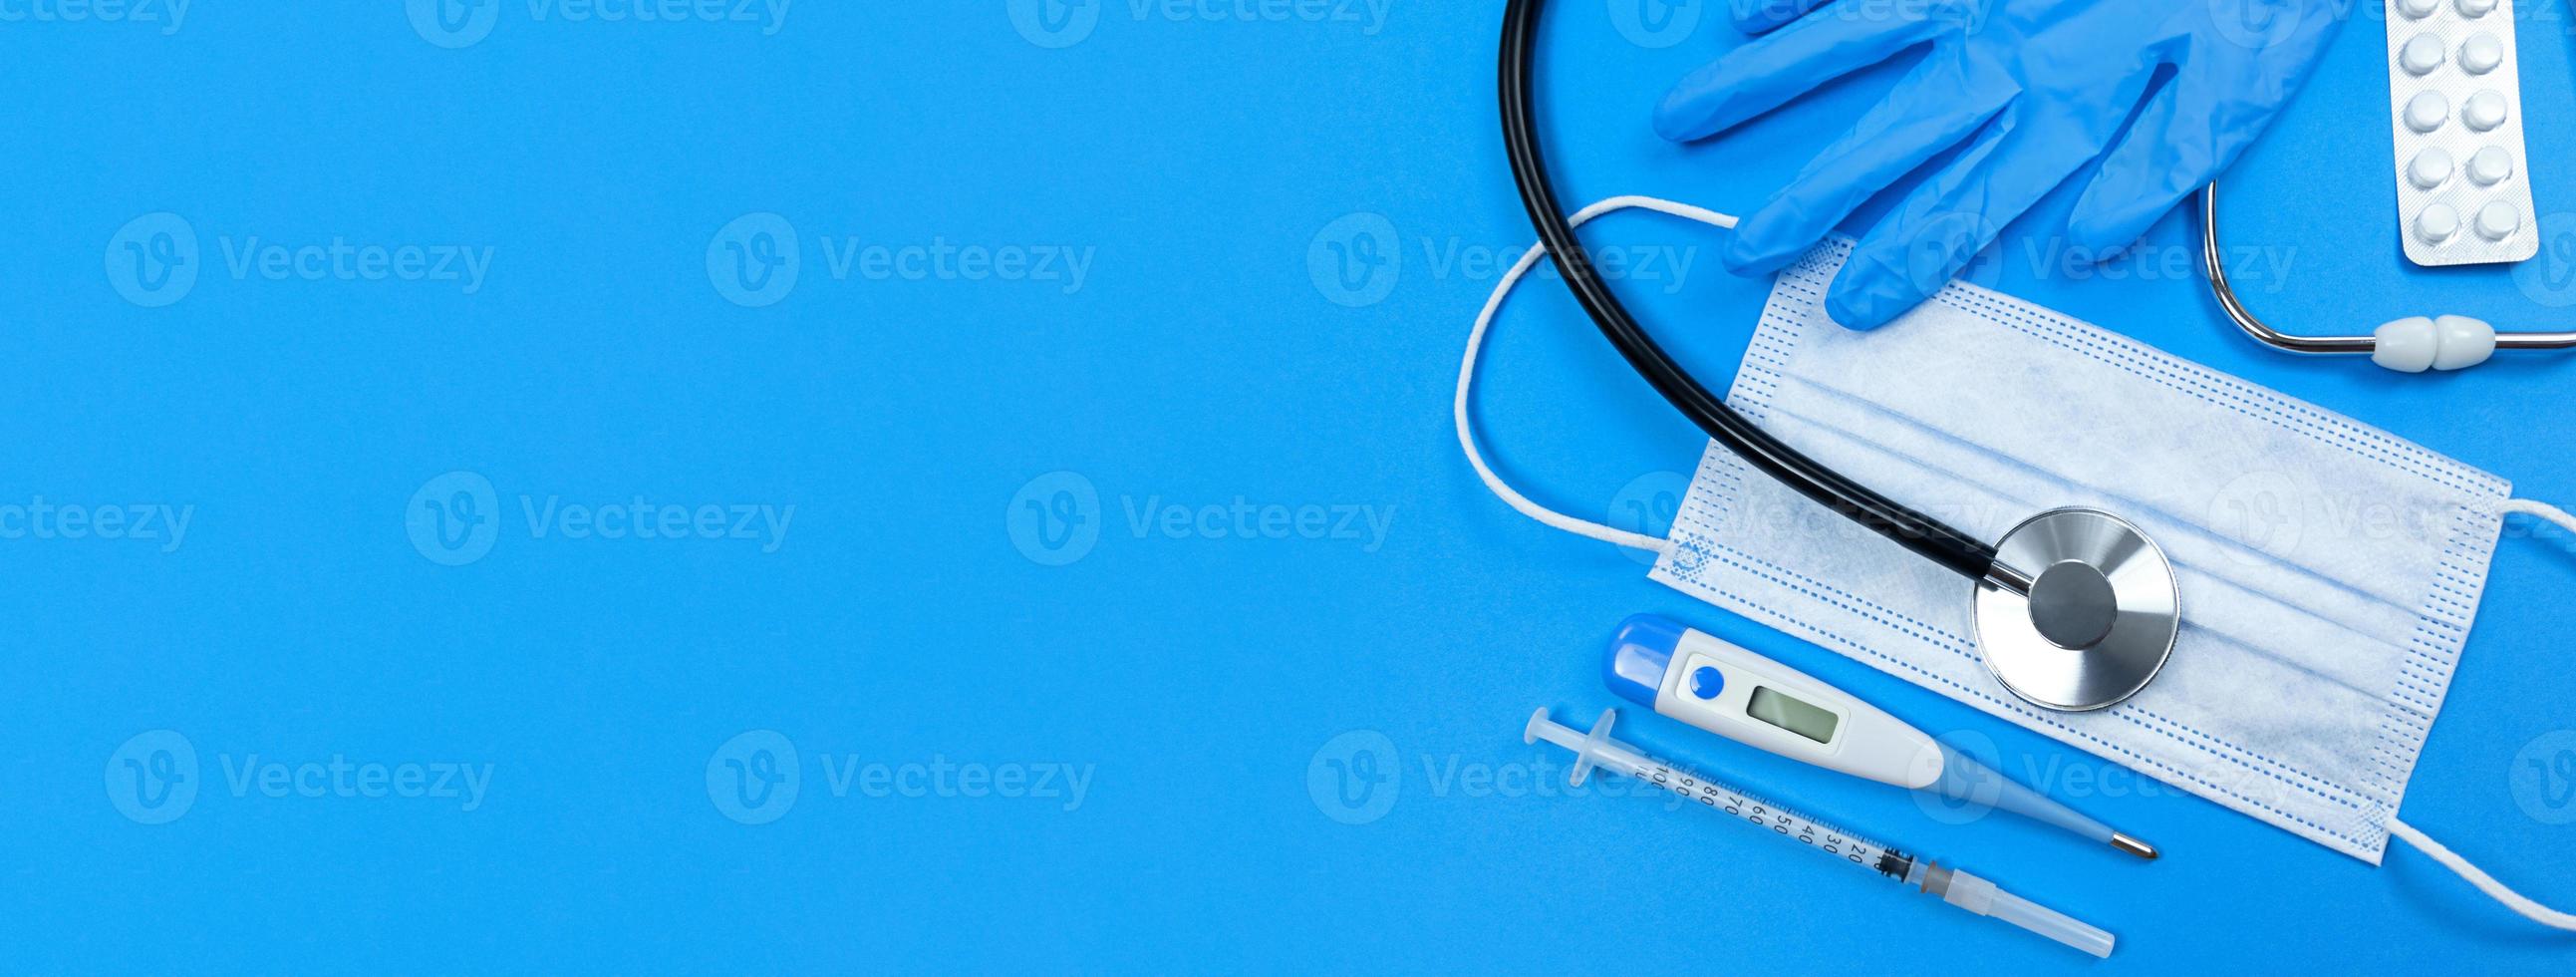 stetoscopio maschera facciale siringa medica termometro pillole blister e guanti medici su sfondo blu piatto banner laici con spazio di copia foto